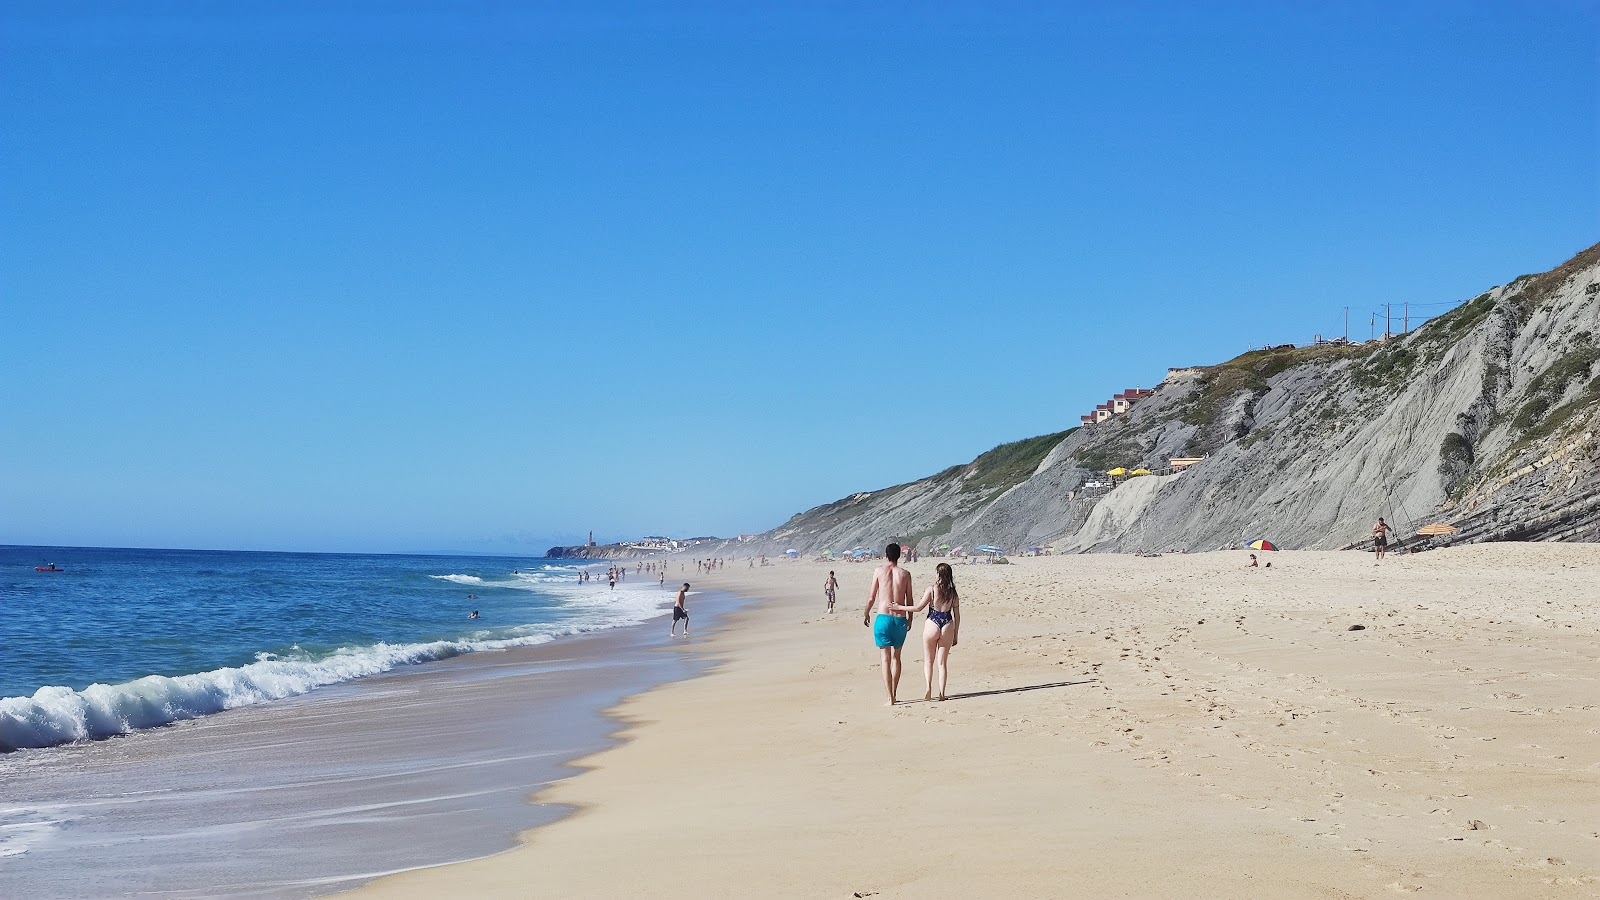 Foto af Praia da Pedra do Ouro - populært sted blandt afslapningskendere